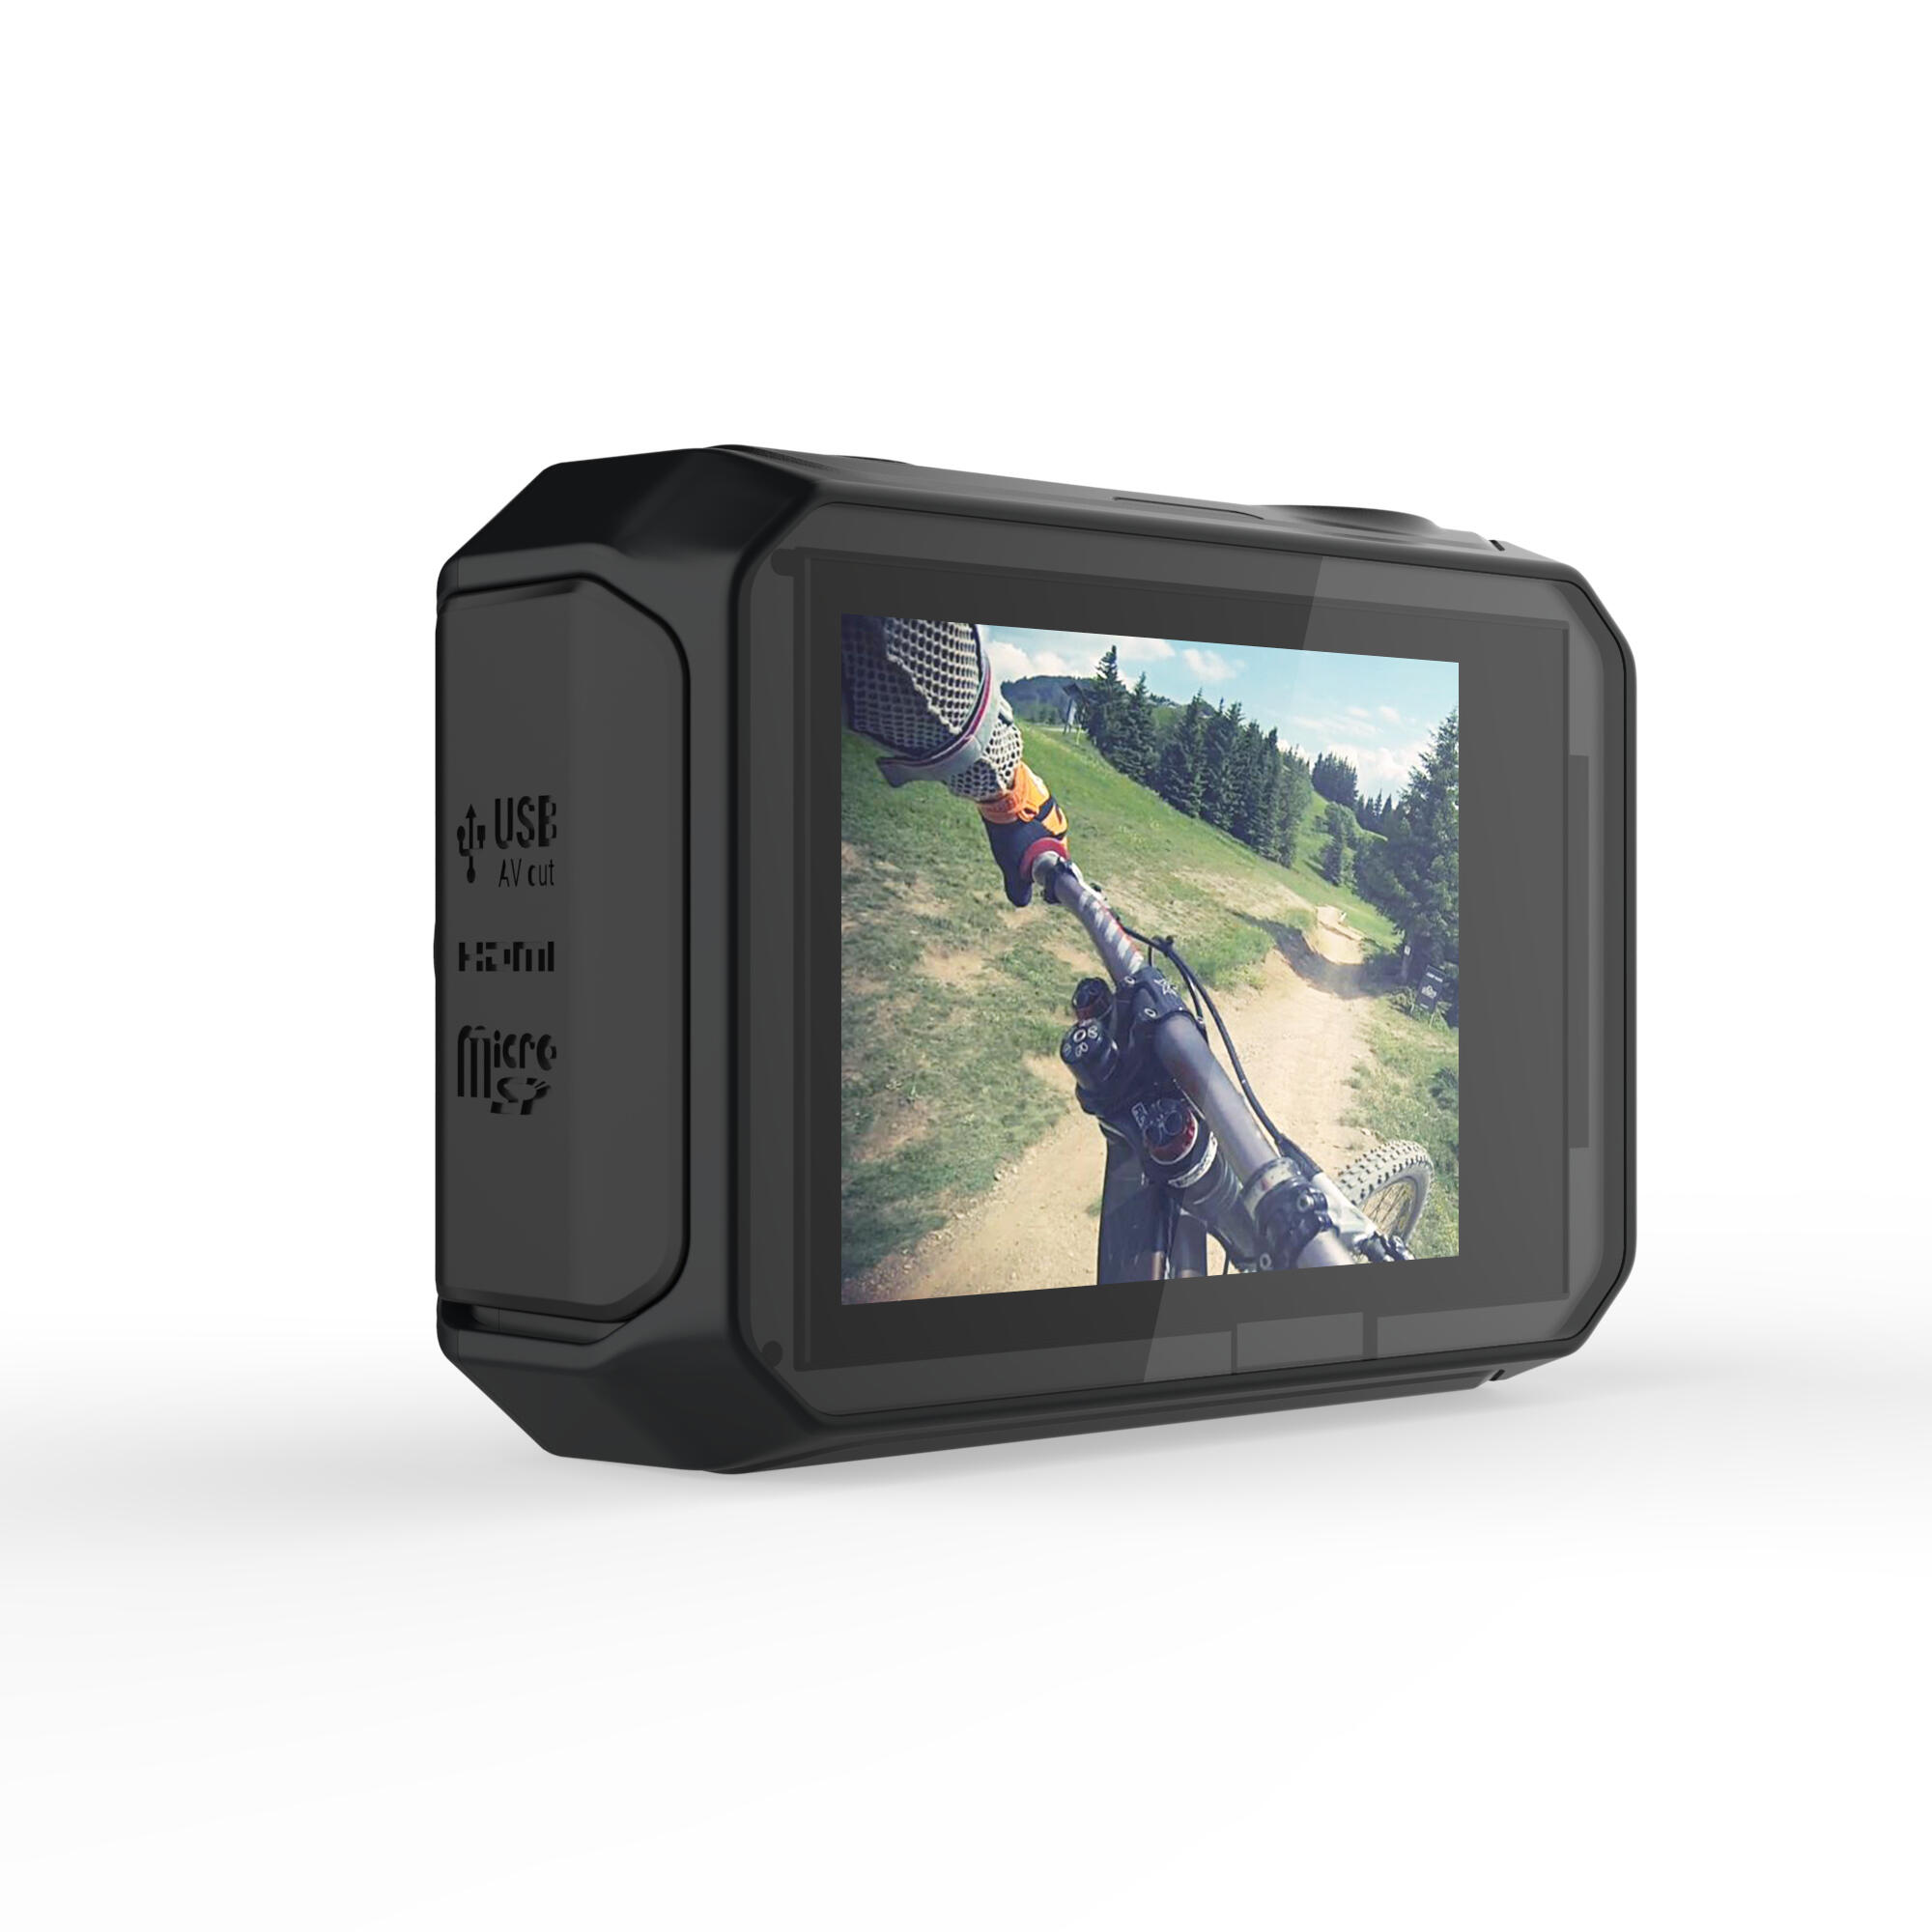 G-EYE 900 4K and FULL HD Sports Camera 